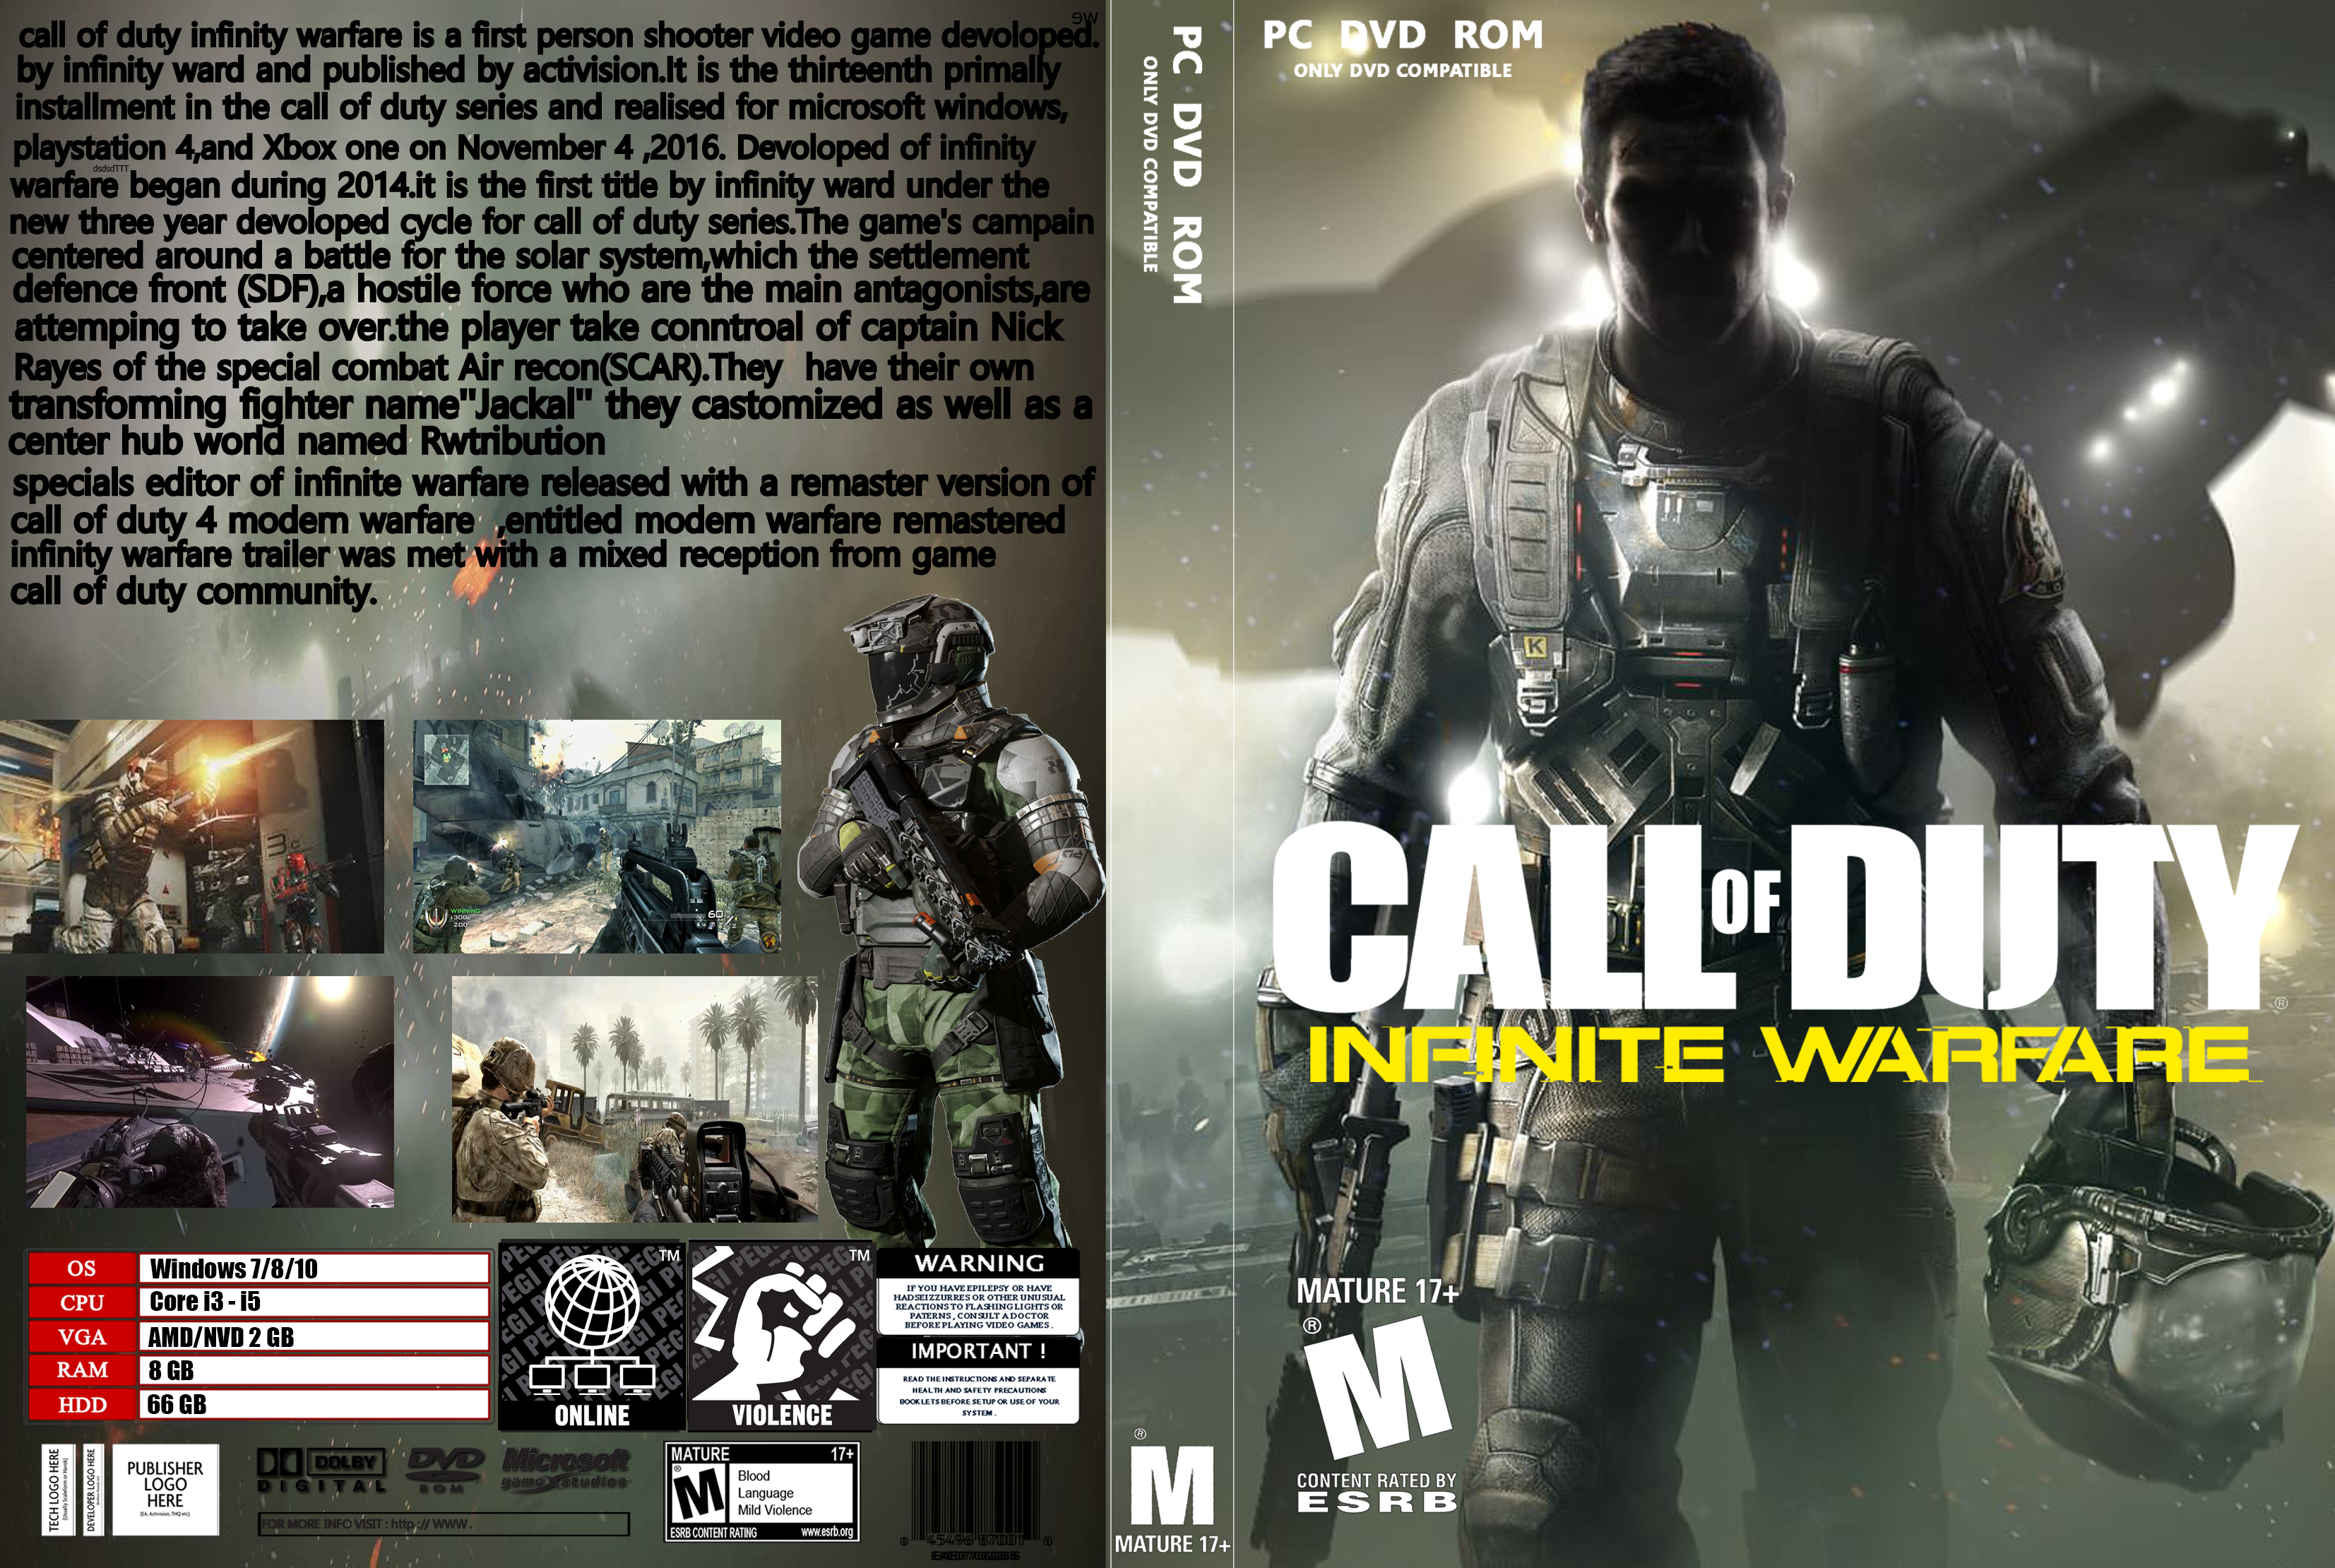 Call of Duty Infinite Warfare box cover